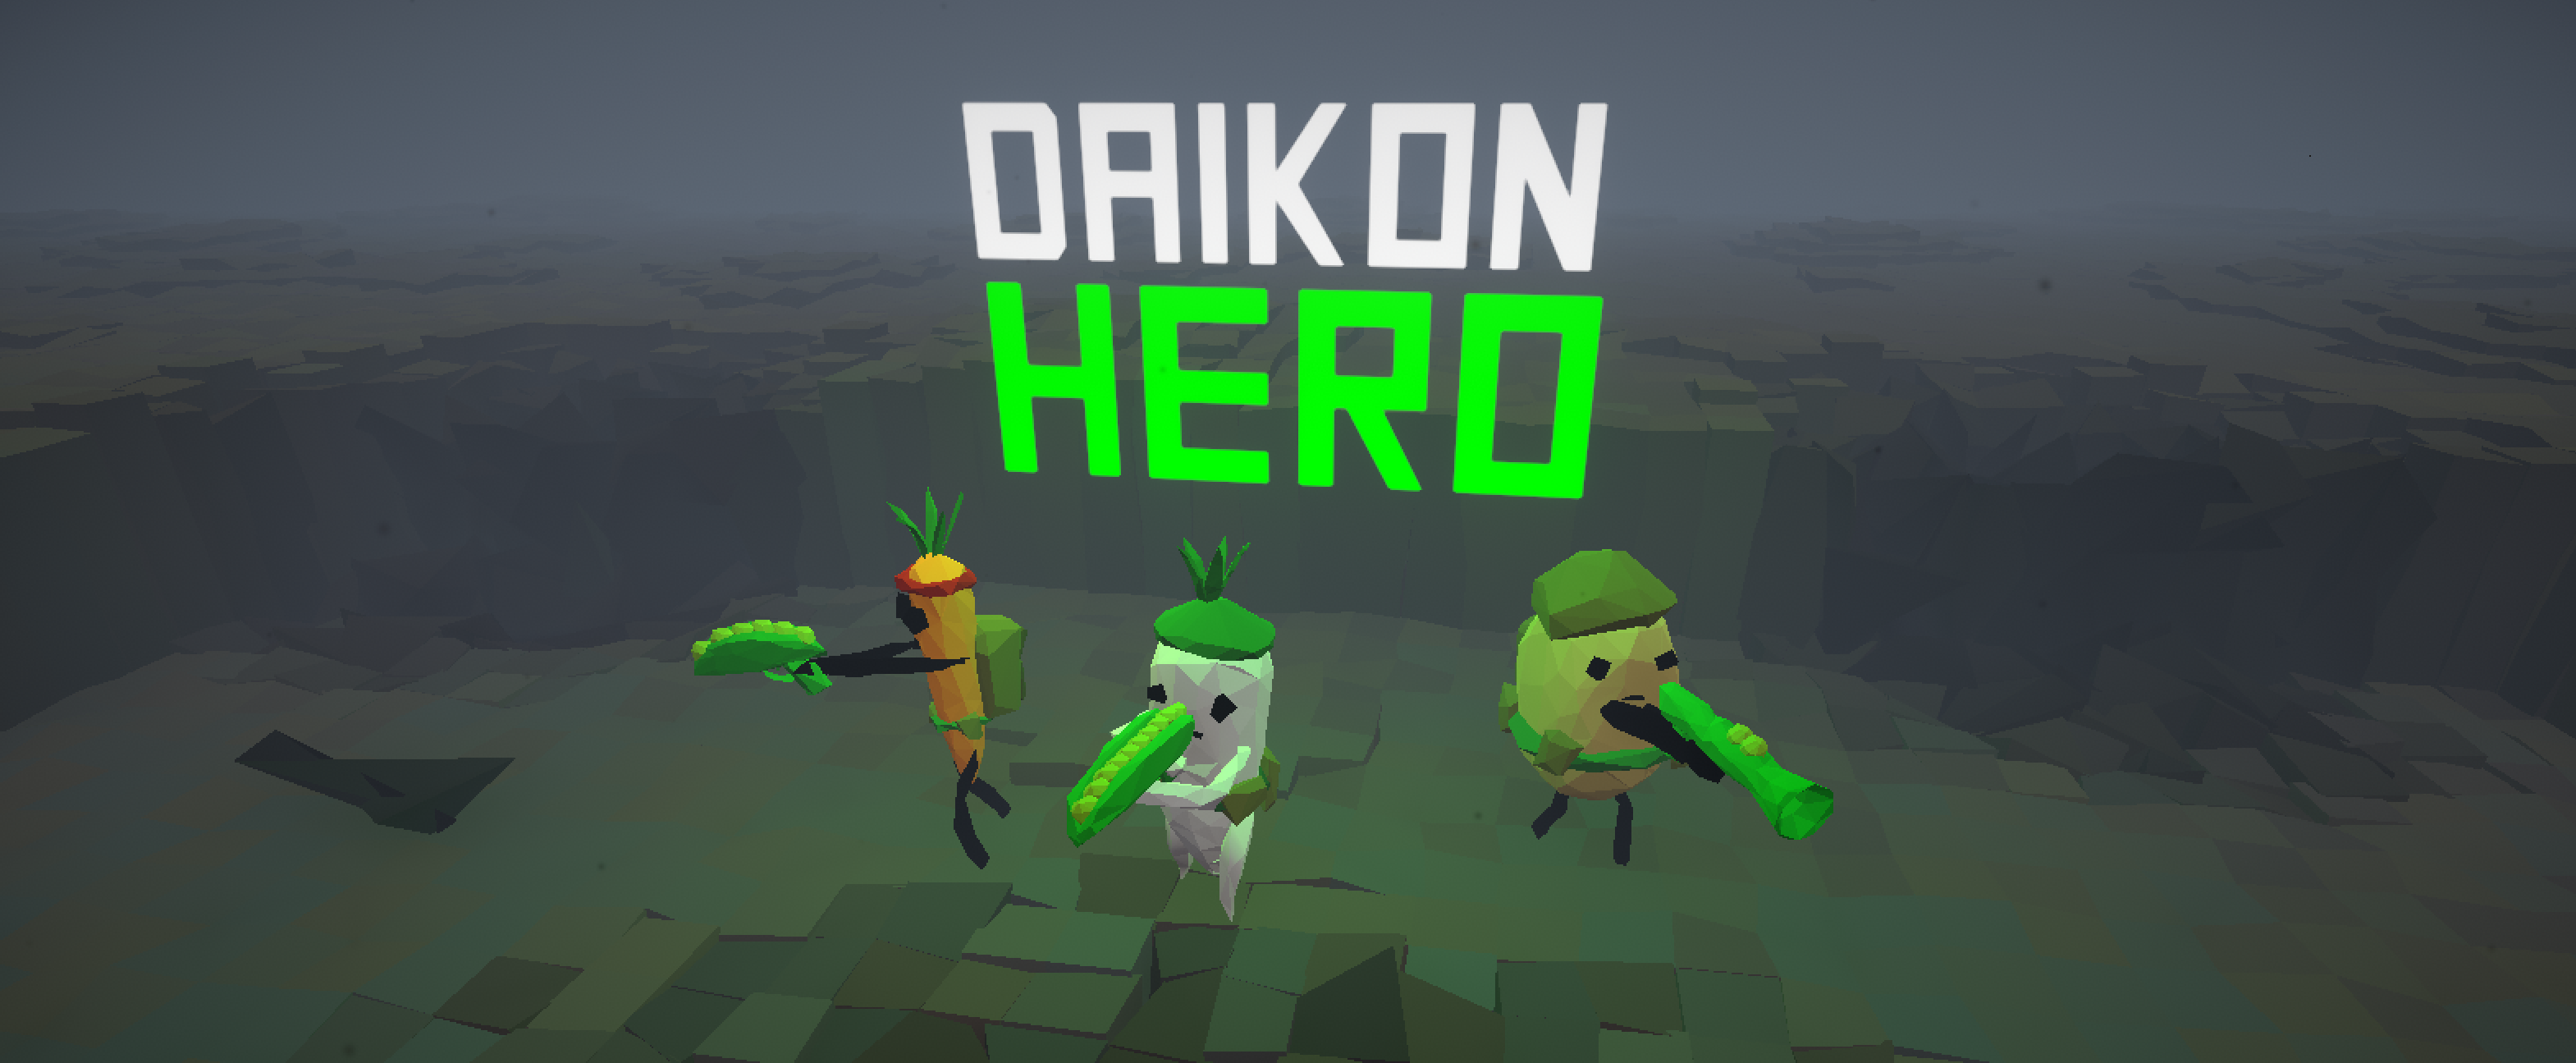 Daikon Hero